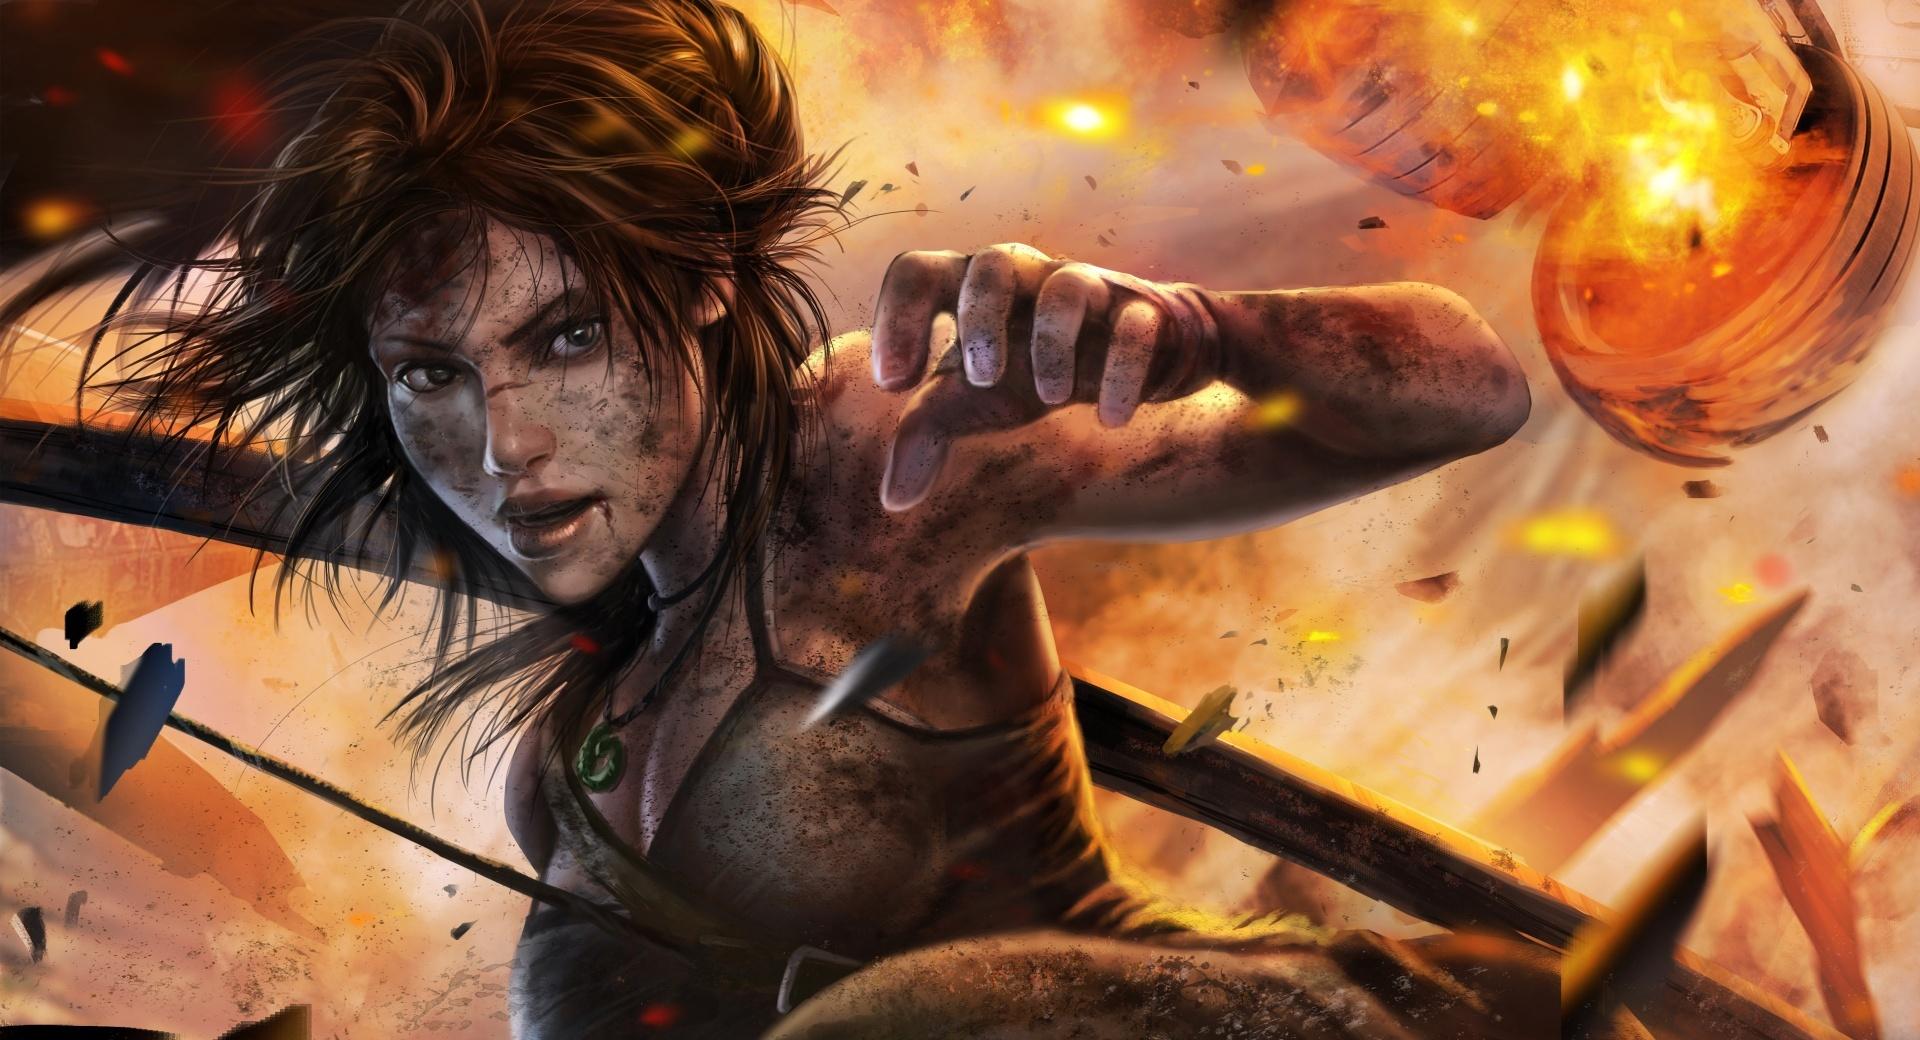 Tomb Raider Lara Croft at 2048 x 2048 iPad size wallpapers HD quality